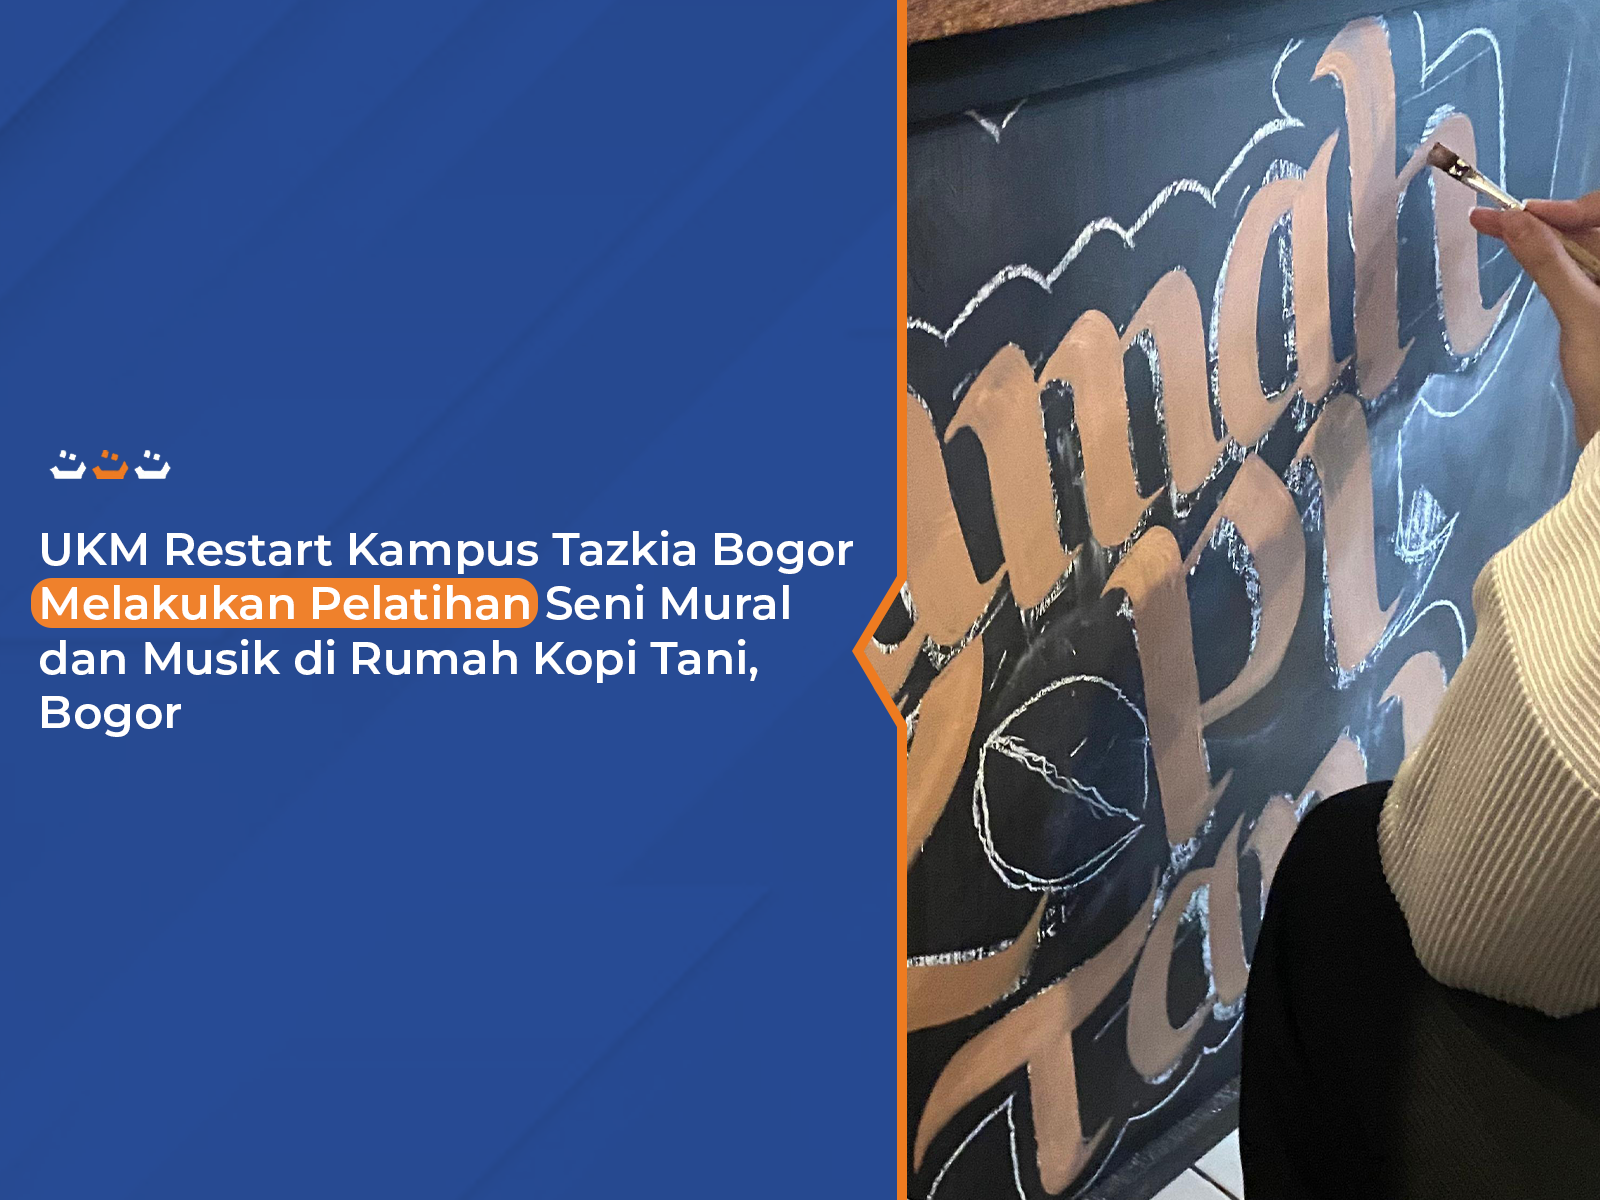 UKM Restart Kampus Tazkia Bogor melakukan pelatihan seni Mural Dan Musik di Rumah Kopi Tani, Bogor